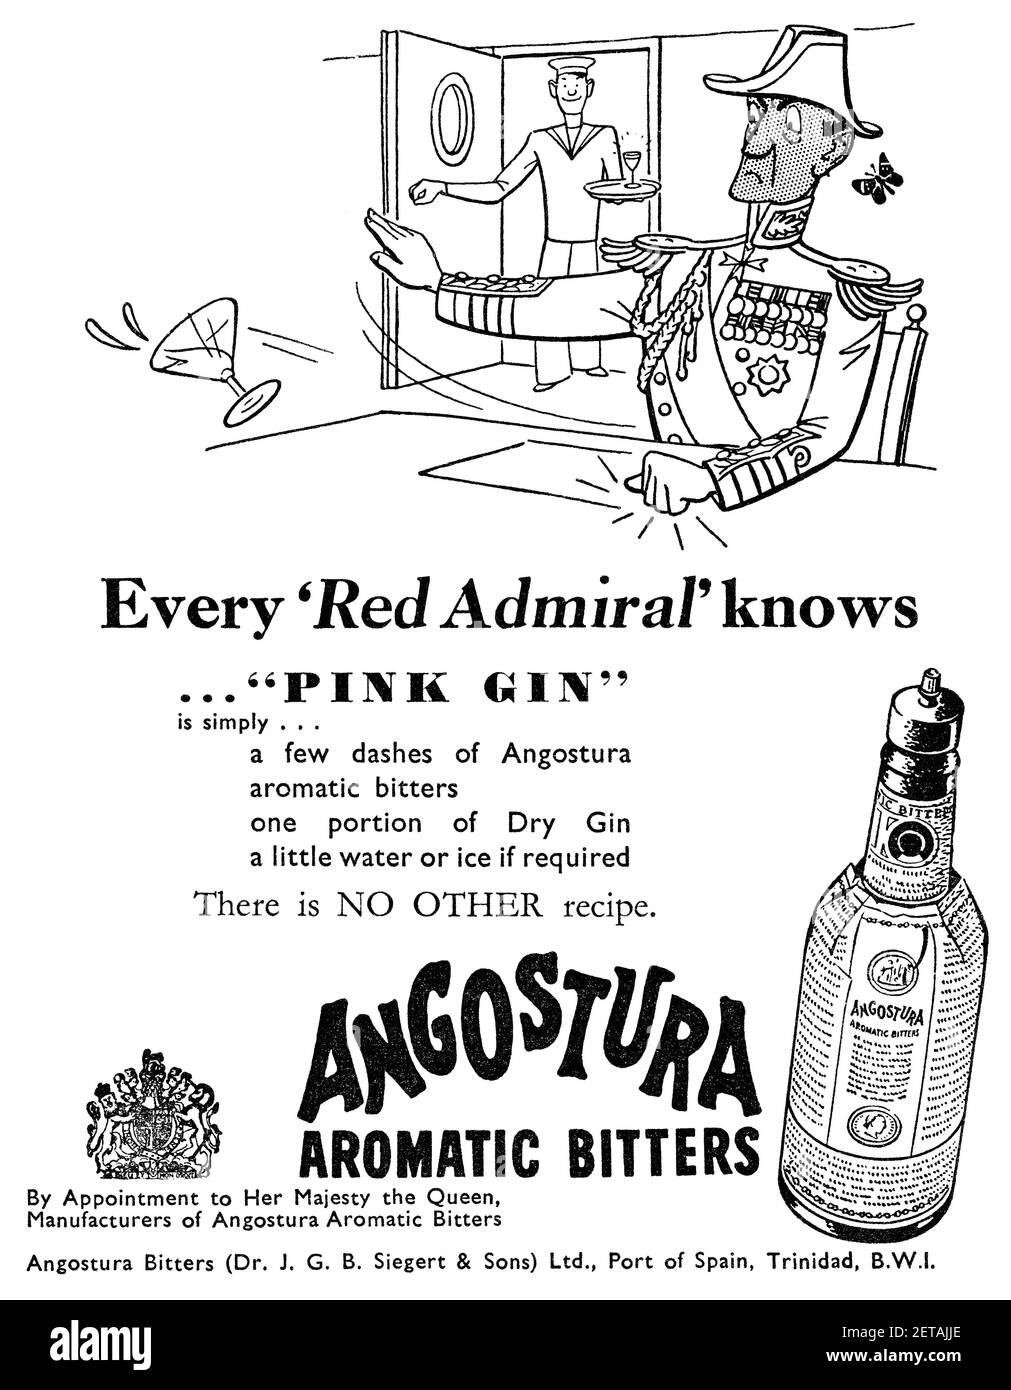 1959 pubblicità britannica per i Bitters aromatici di Angostura. Foto Stock